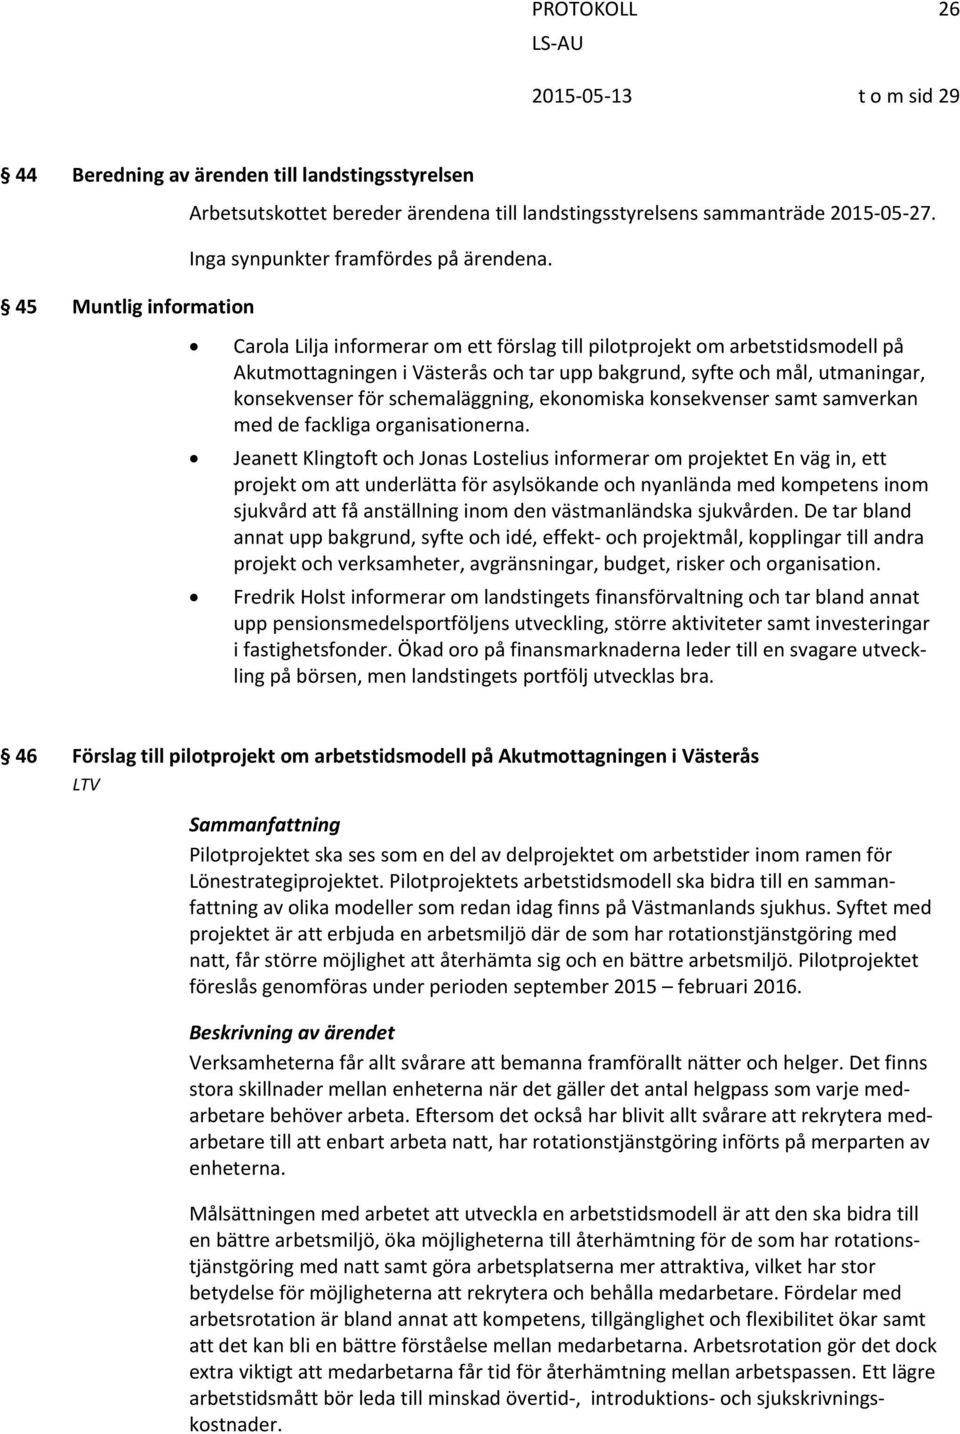 45 Muntlig information Carola Lilja informerar om ett förslag till pilotprojekt om arbetstidsmodell på Akutmottagningen i Västerås och tar upp bakgrund, syfte och mål, utmaningar, konsekvenser för